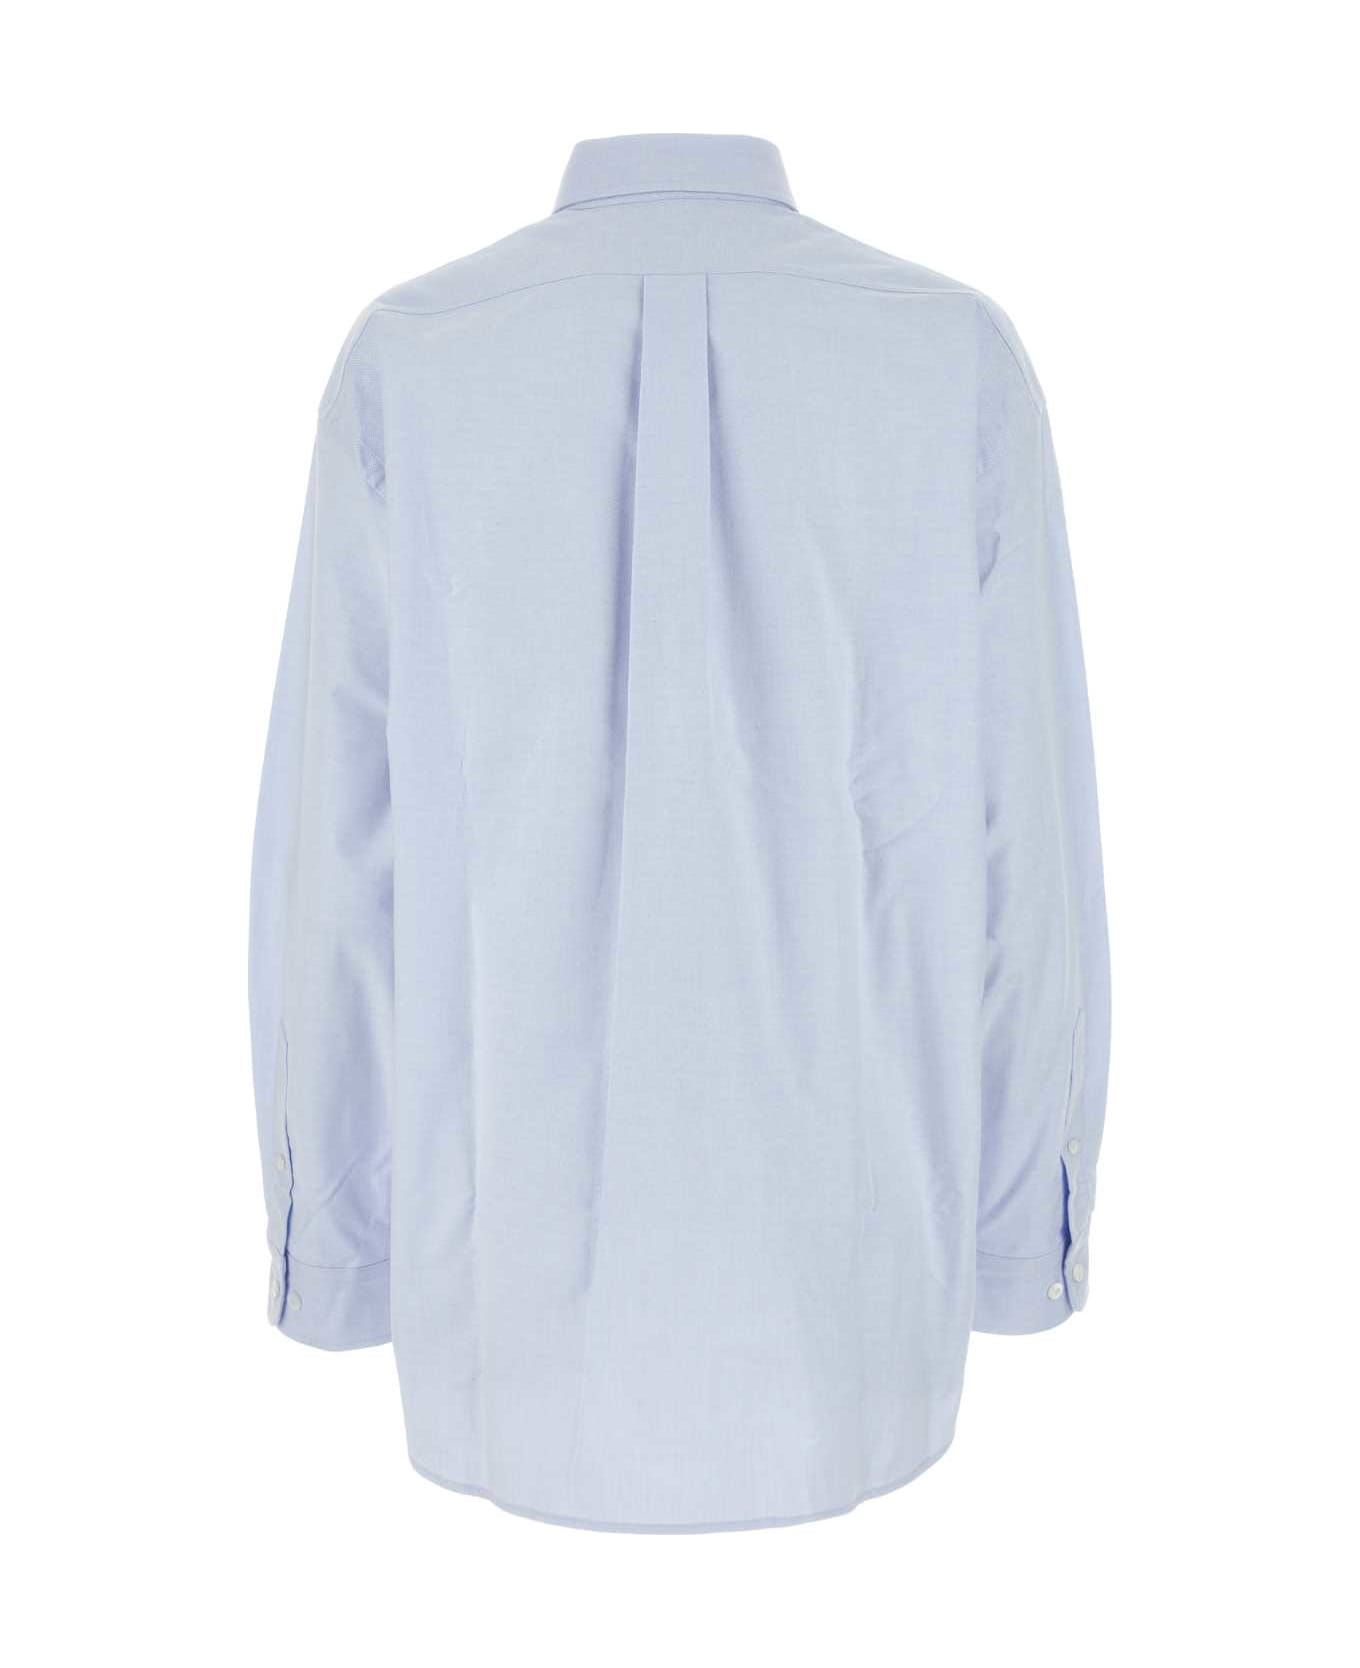 Prada Light Blue Oxford Oversize Shirt - CIELO シャツ